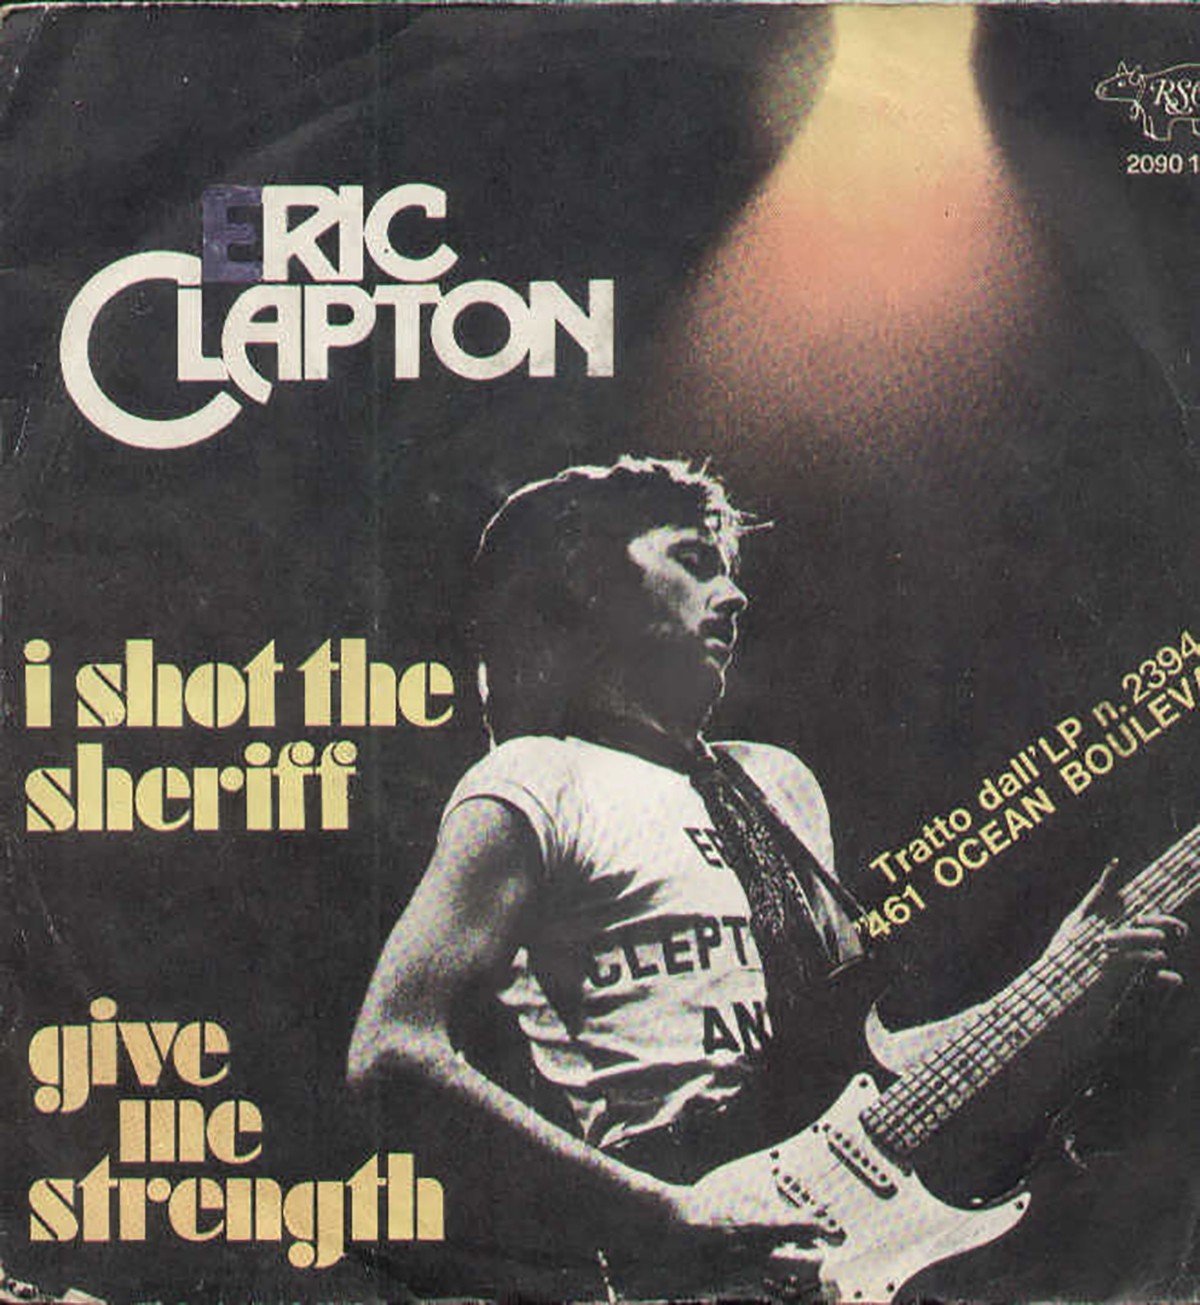 Eric Clapton - J'ai tiré sur le shérif